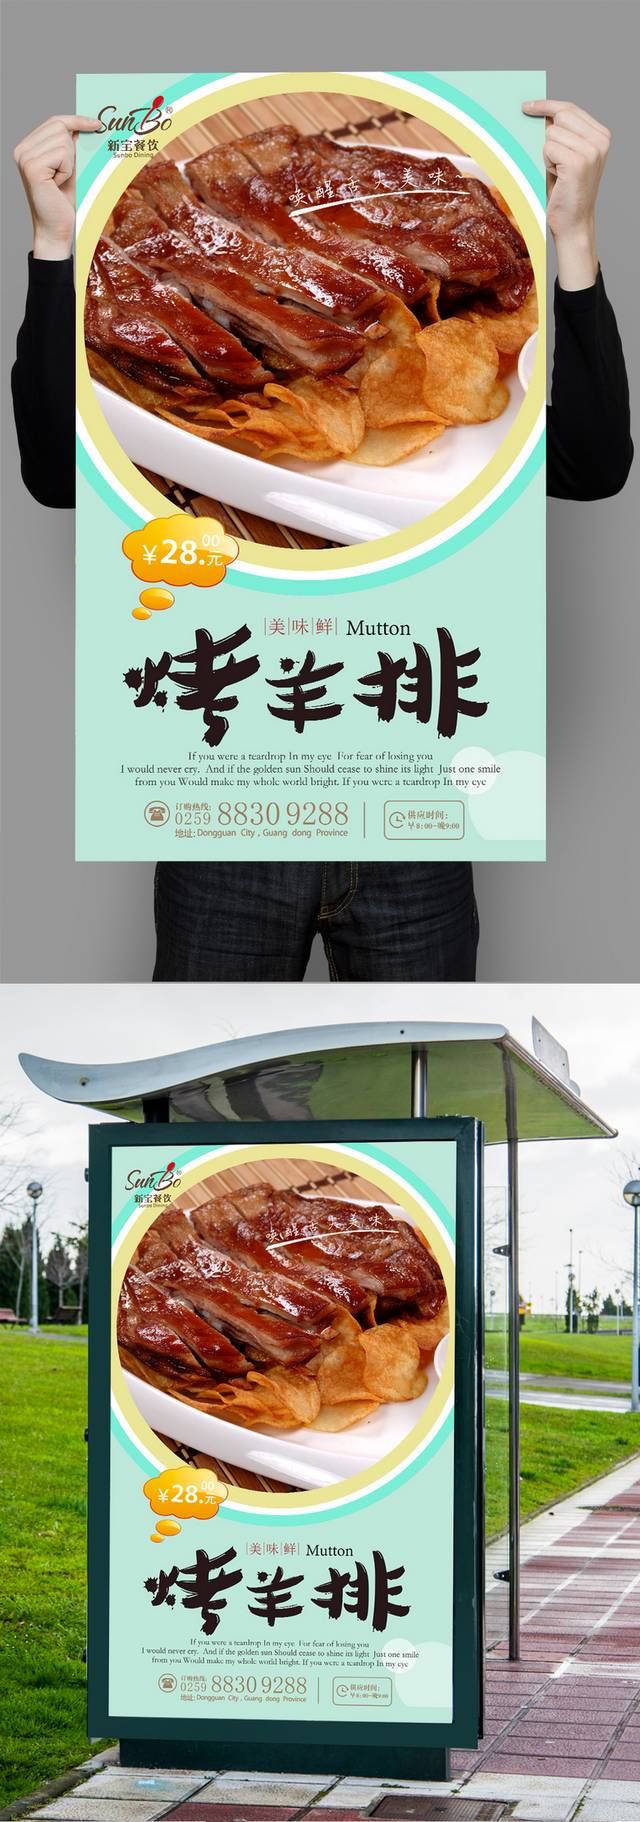 烤羊排美食宣传海报设计